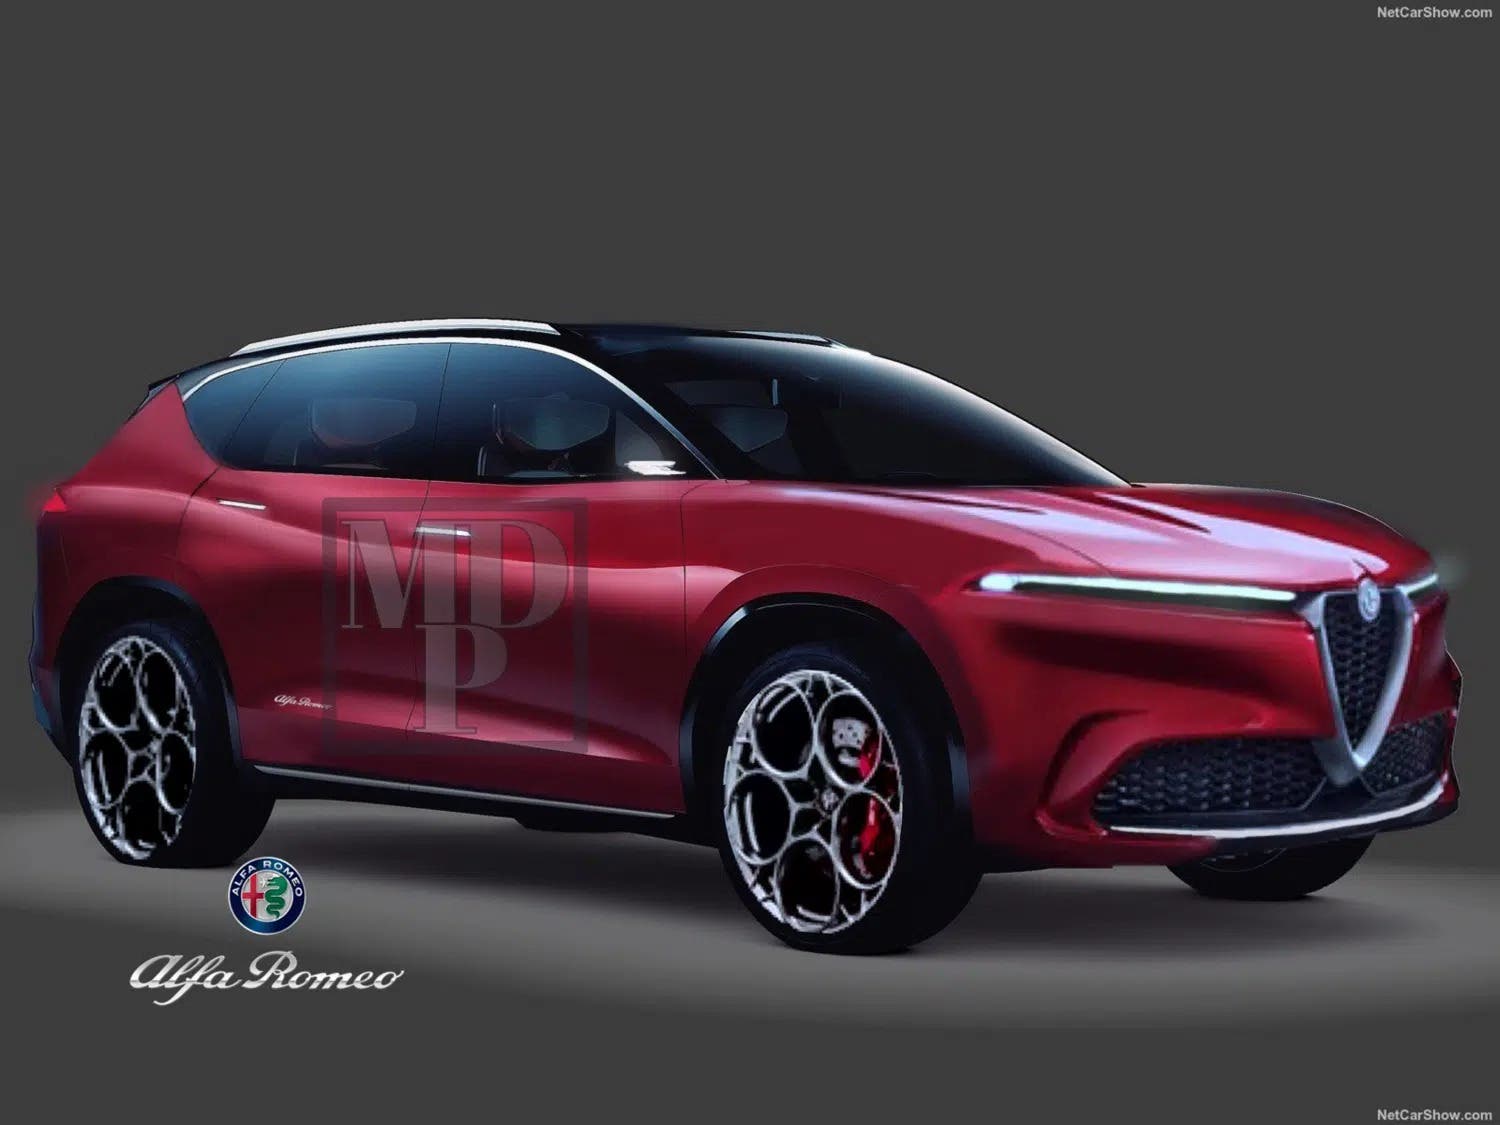 Alfa Romeo maxi SUV